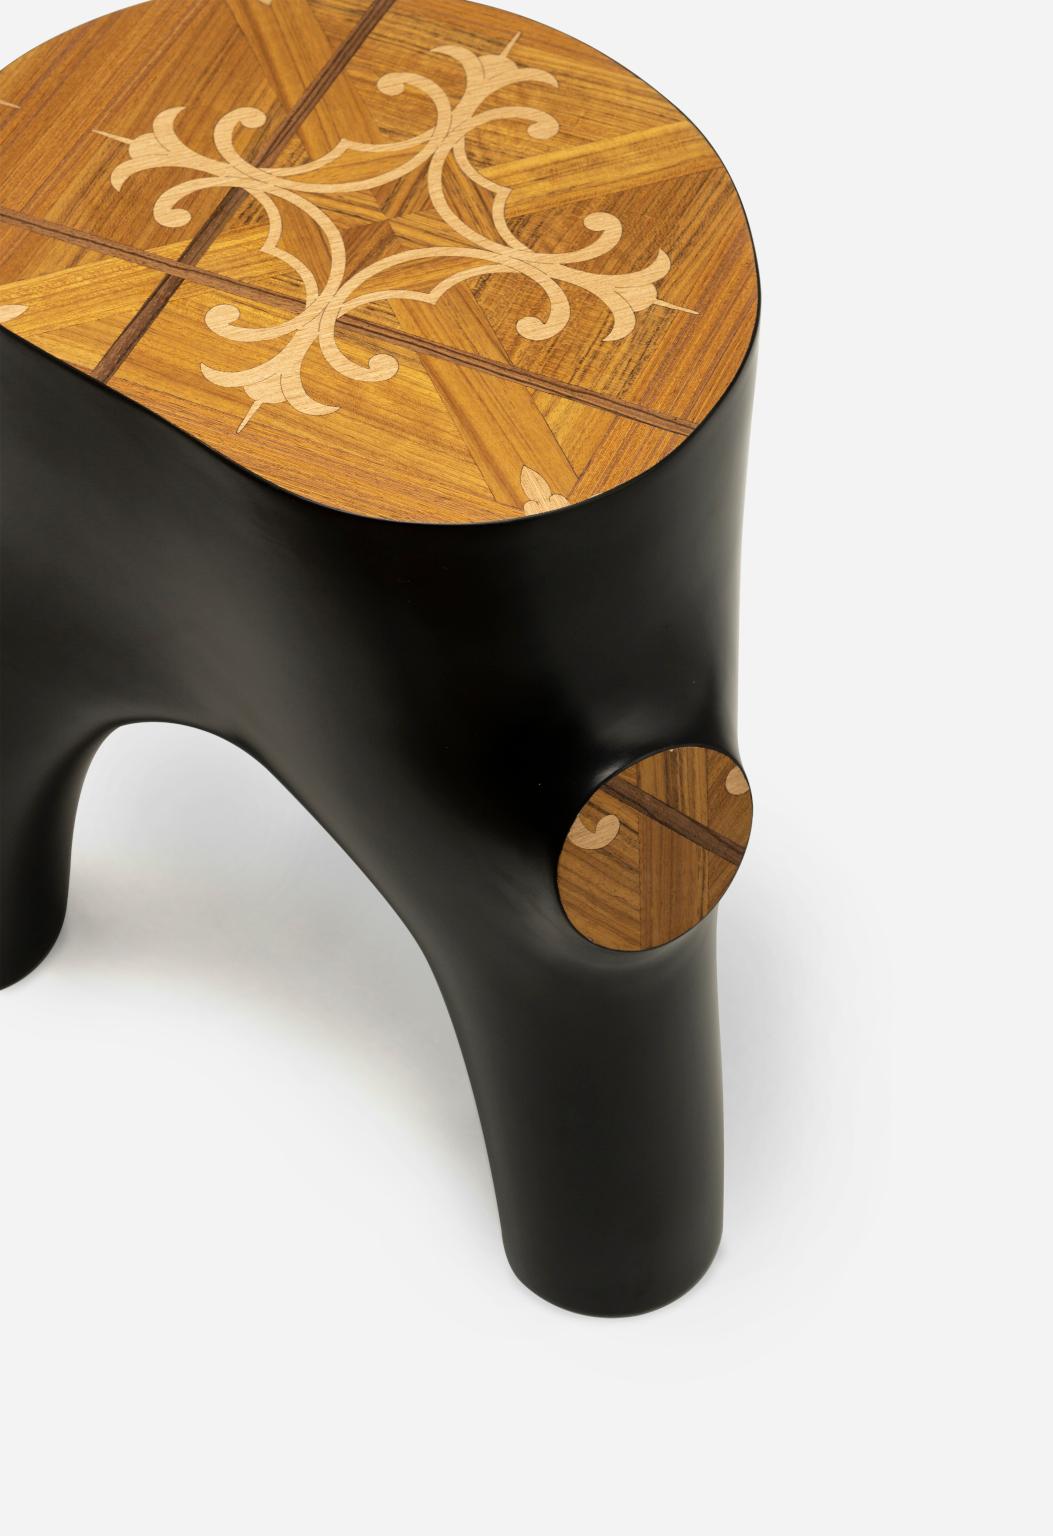 Stumpf
Stump è uno tavolino o sgabello che imita le forme organiche dei ceppi di legno e delle
loro radici. Der Flügel, der mit einem fiorentinischen Motiv versehen ist, wurde in verschiedenen Stilrichtungen realisiert
di legno.
Stump ist ein